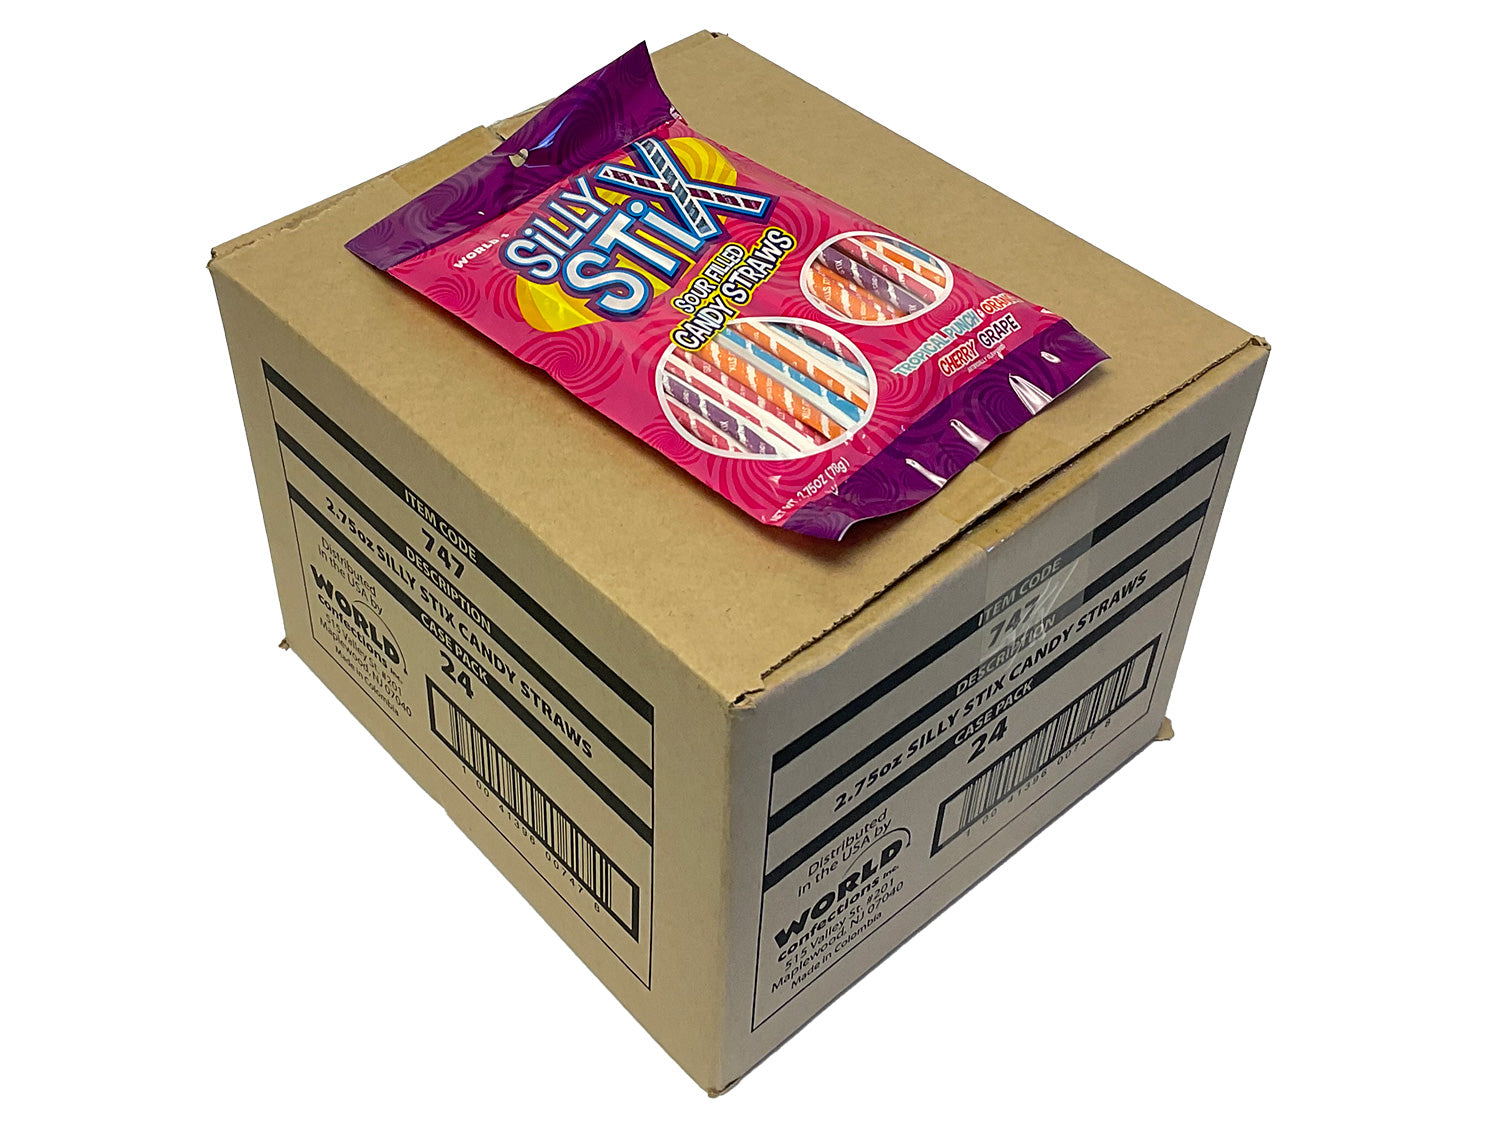 Silly Stix Straws - 2.75 oz bag - box of 24